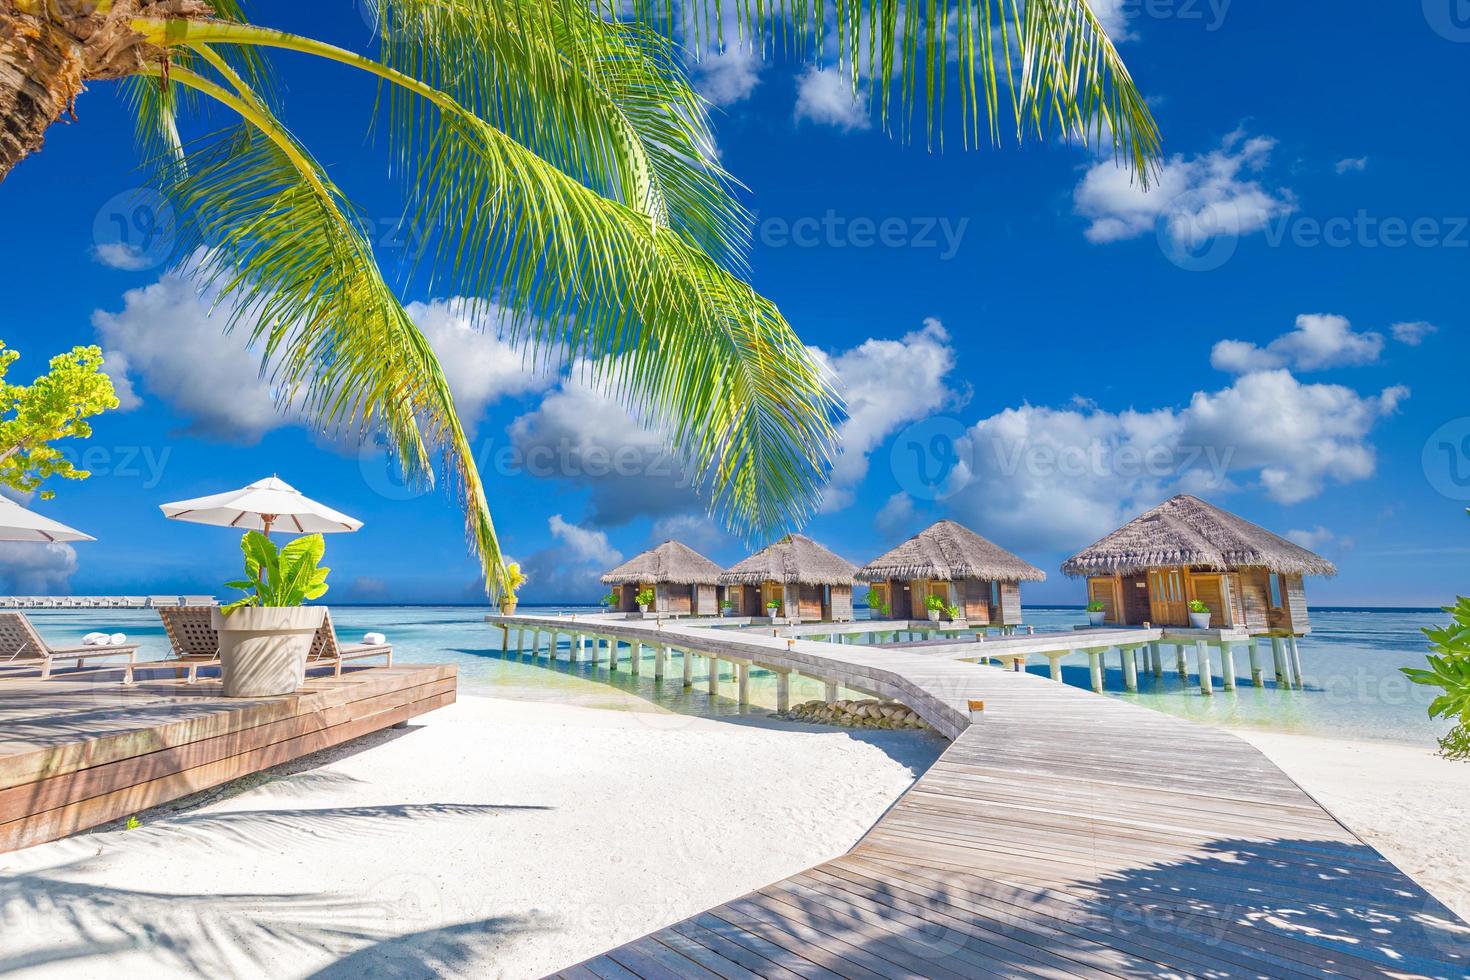 lyxhotell eller resort på en tropisk strand, vattenvillor, bungalows träbrygga. lyxigt spa och välbefinnande bakgrund. sommarparadisön, exotiskt reselandskap, havslandskap foto